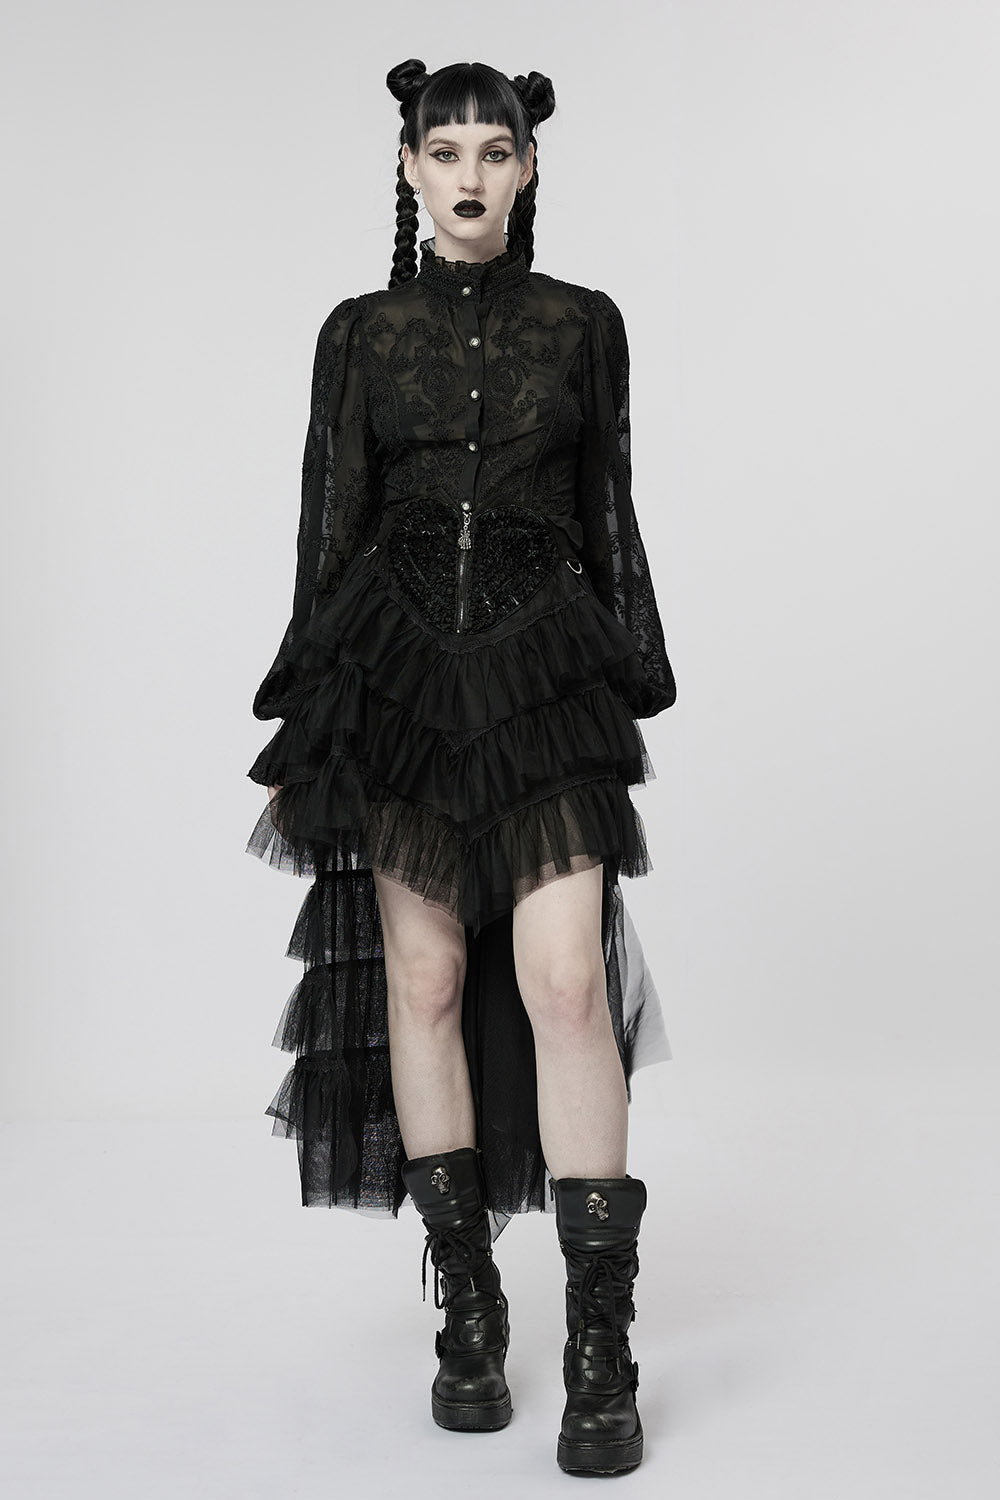 Black Tea Party Tulle Skirt [BLACK]